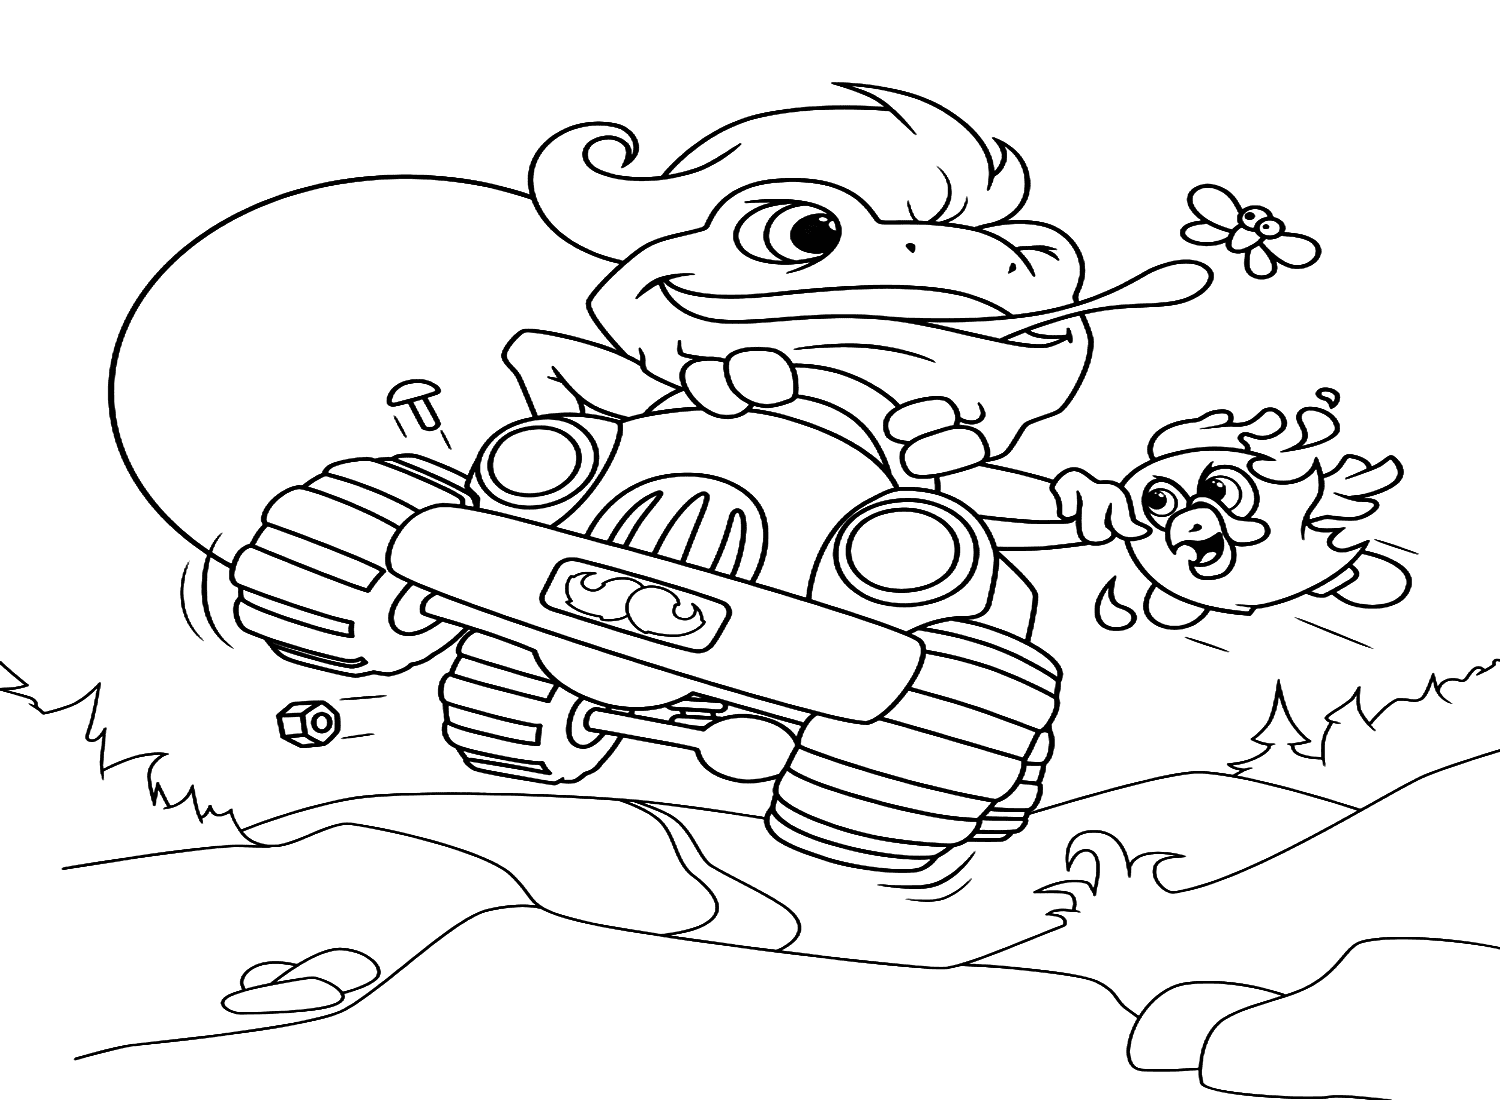 Ausmalbilder Cartoon-Aga-Kröte von Cane-Toad